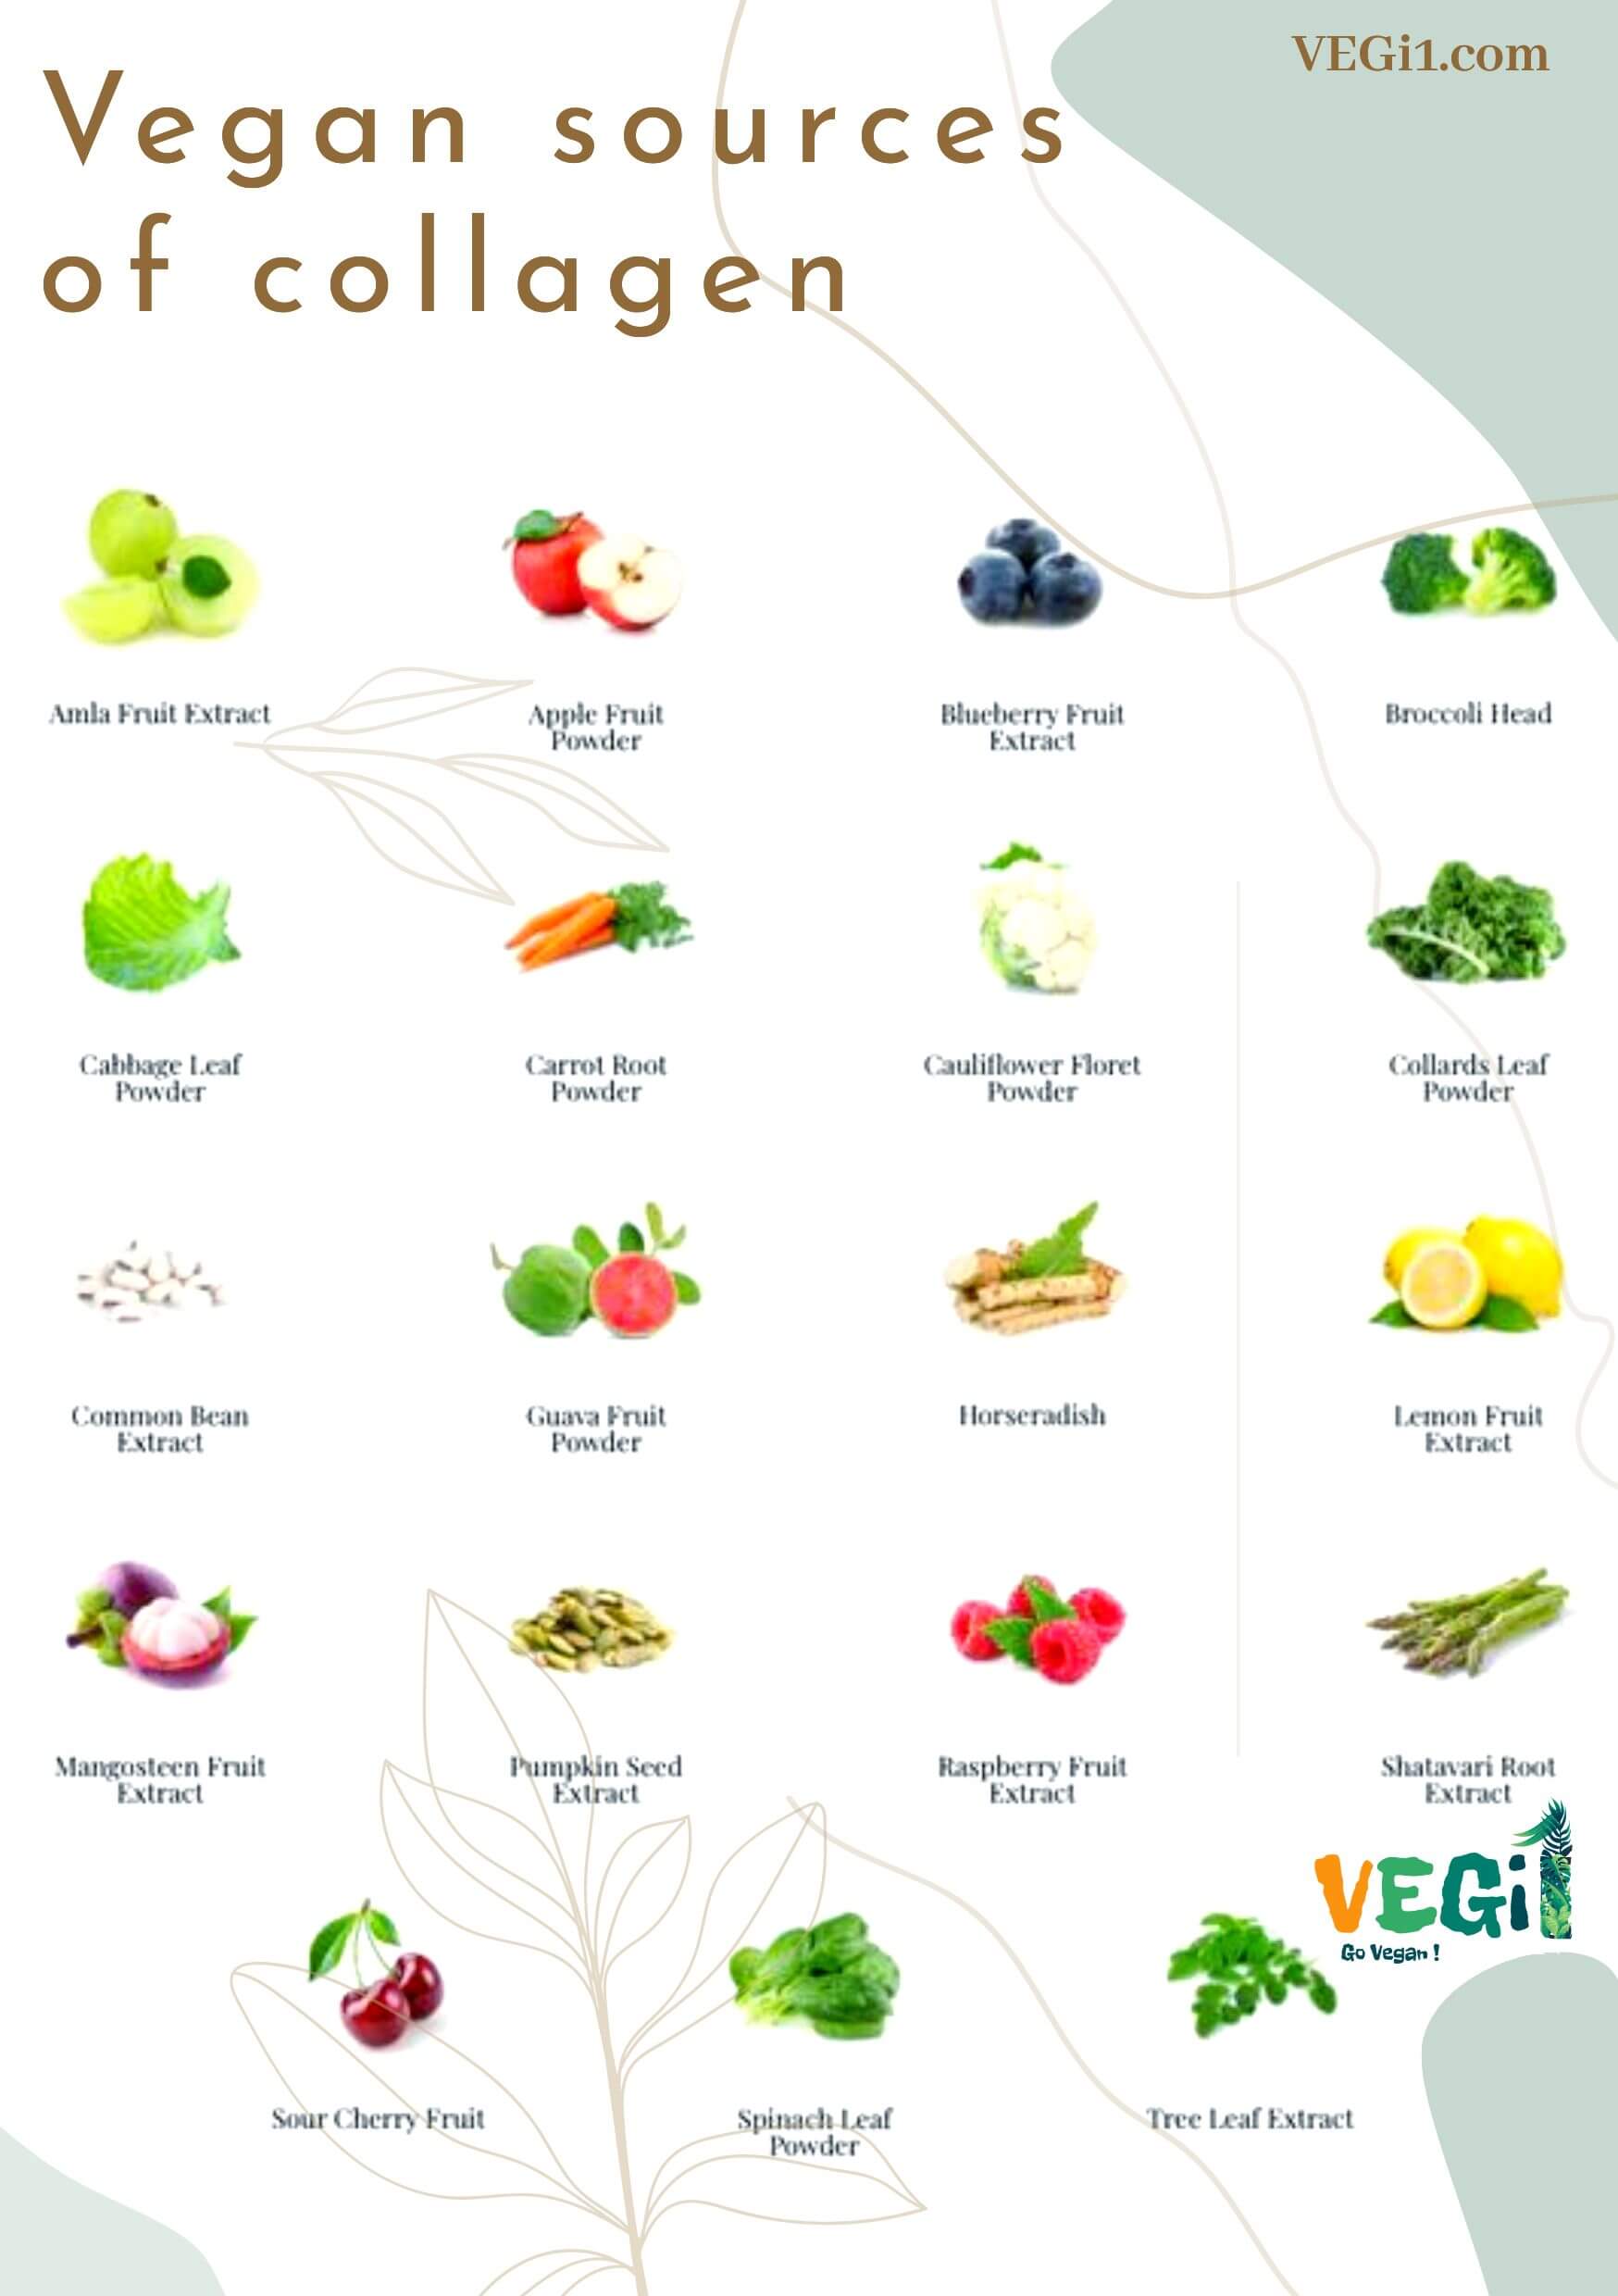 Vegan sources of collagen